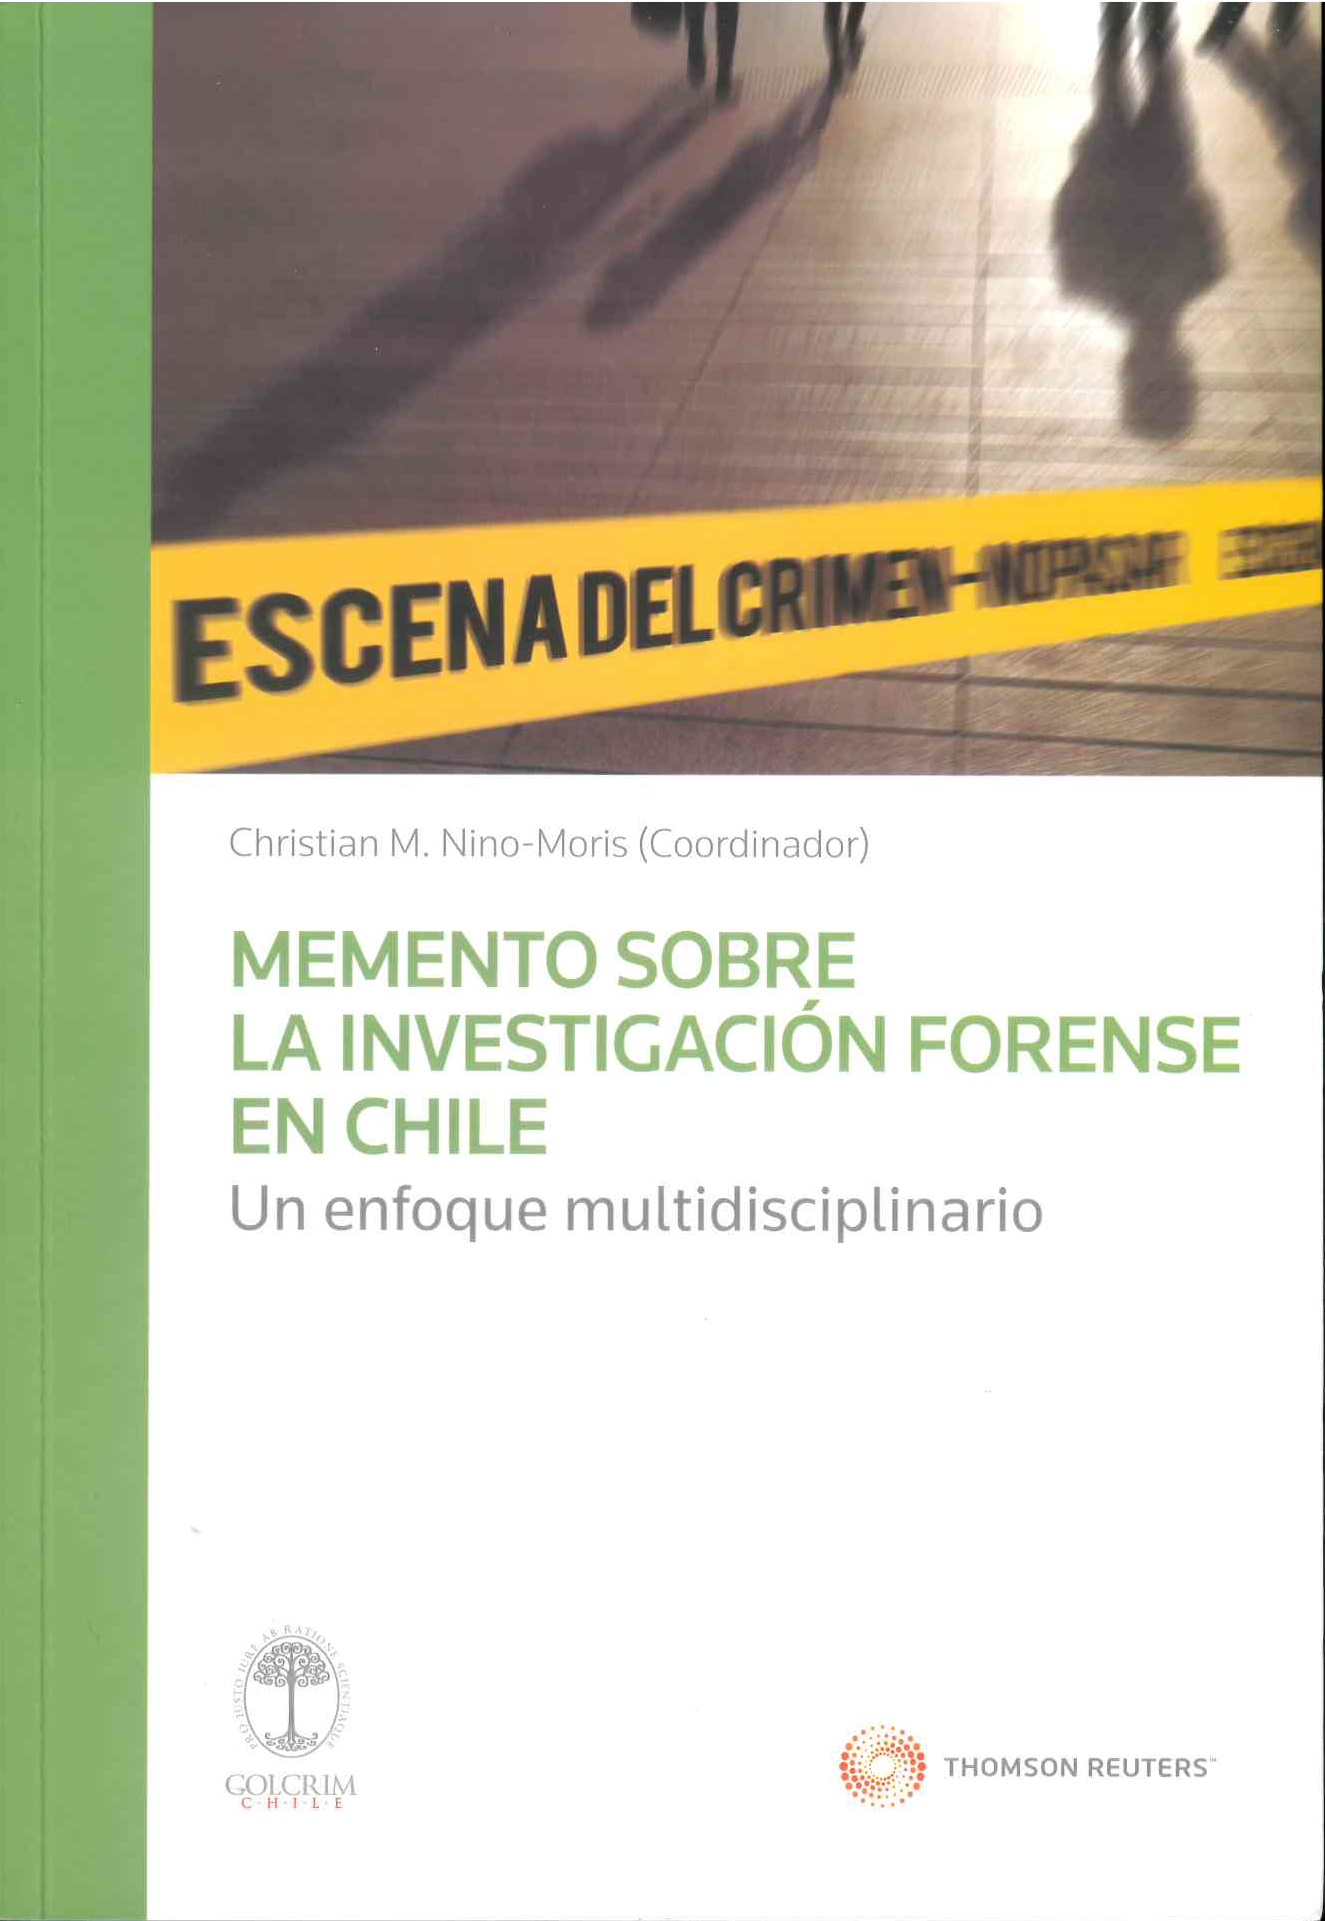 Memento sobre la investigación forense en chile. Un enfoque multidisciplinario